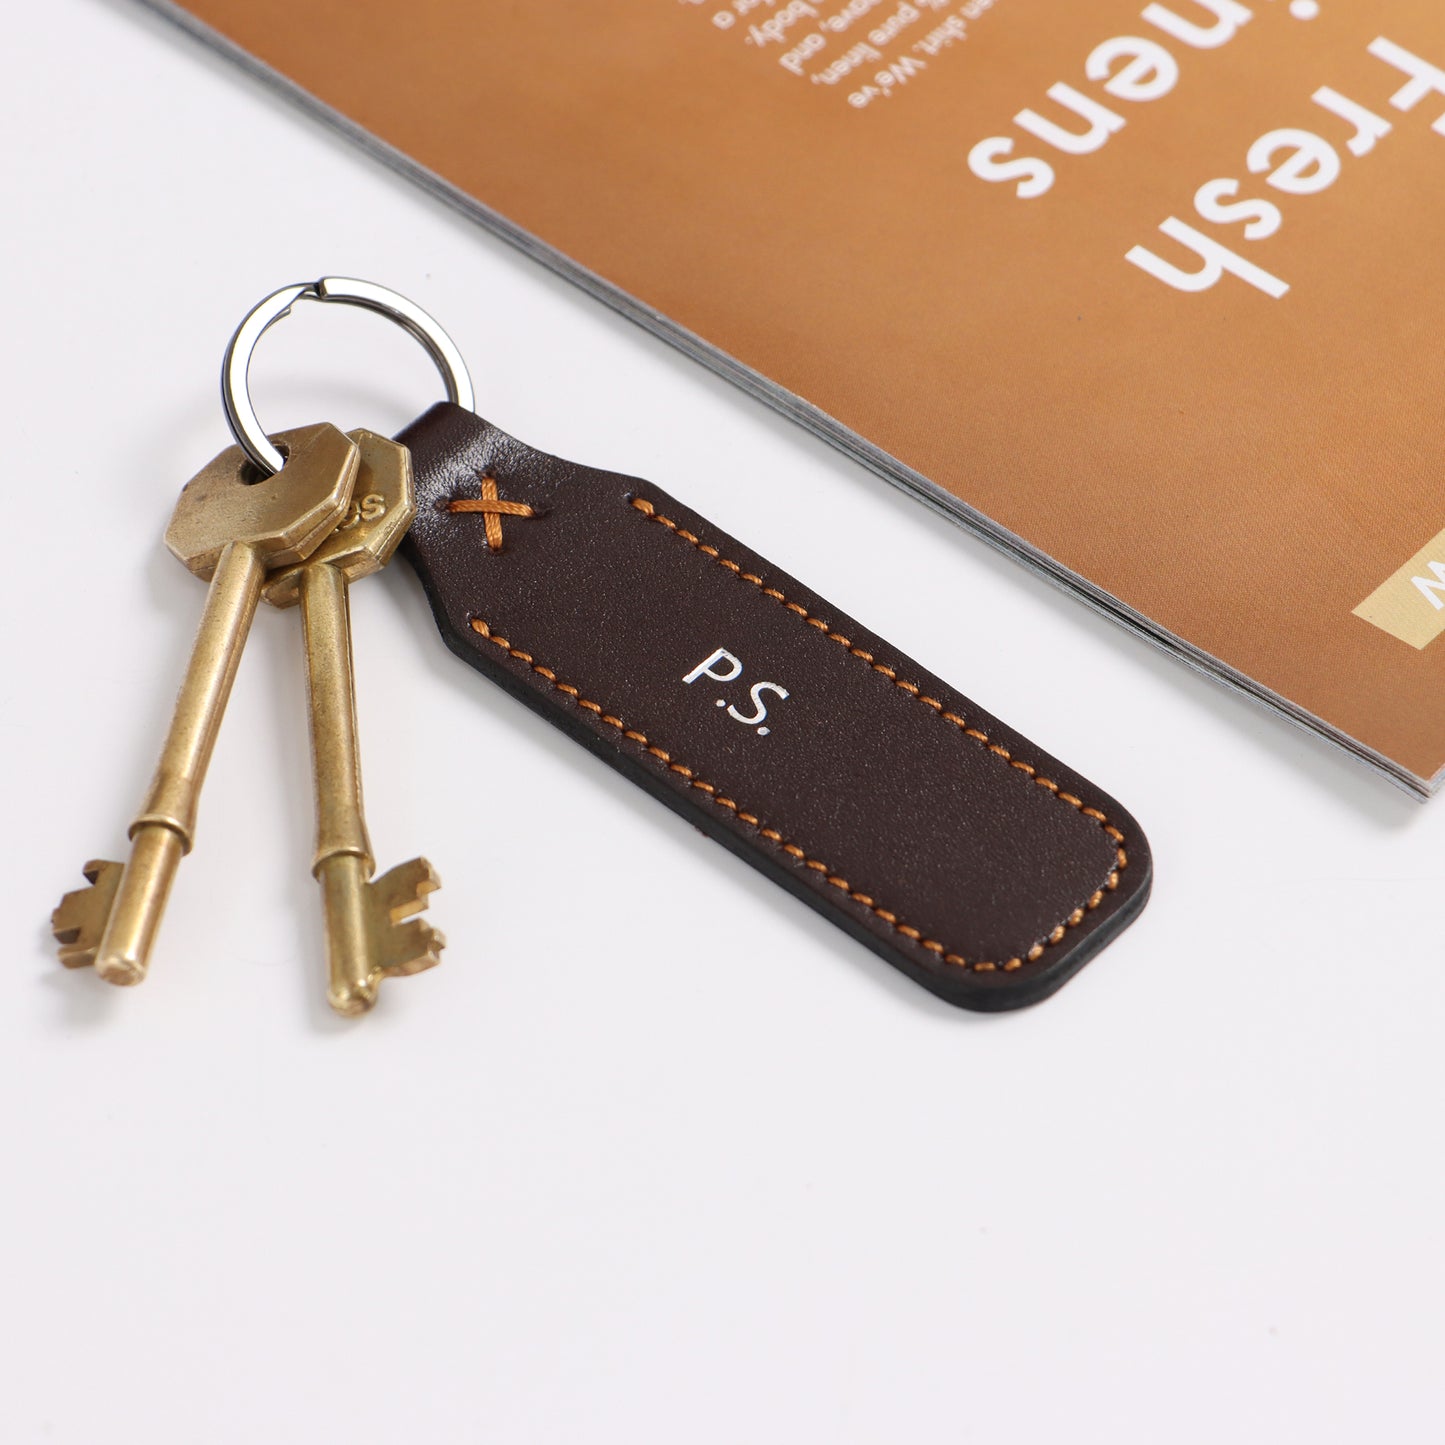 Leather Keyring Emboss Monogrammed Key Holder